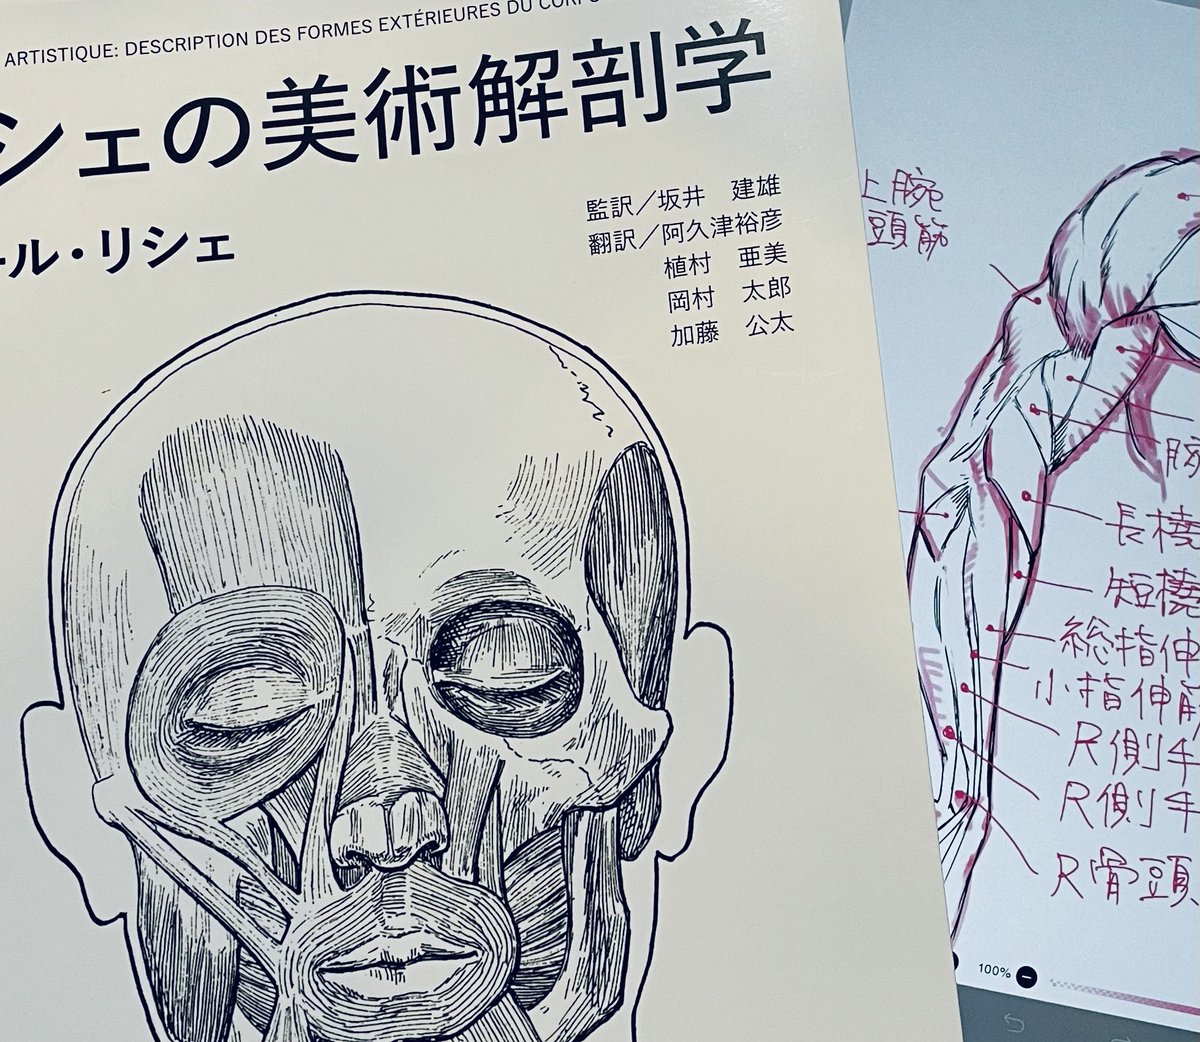 加藤先生がお勧めされてた「リシェの美術解剖学」とても美しく見てるだけでも楽しめます。
本に書かれてる使用方法、模写で学び中🐰 